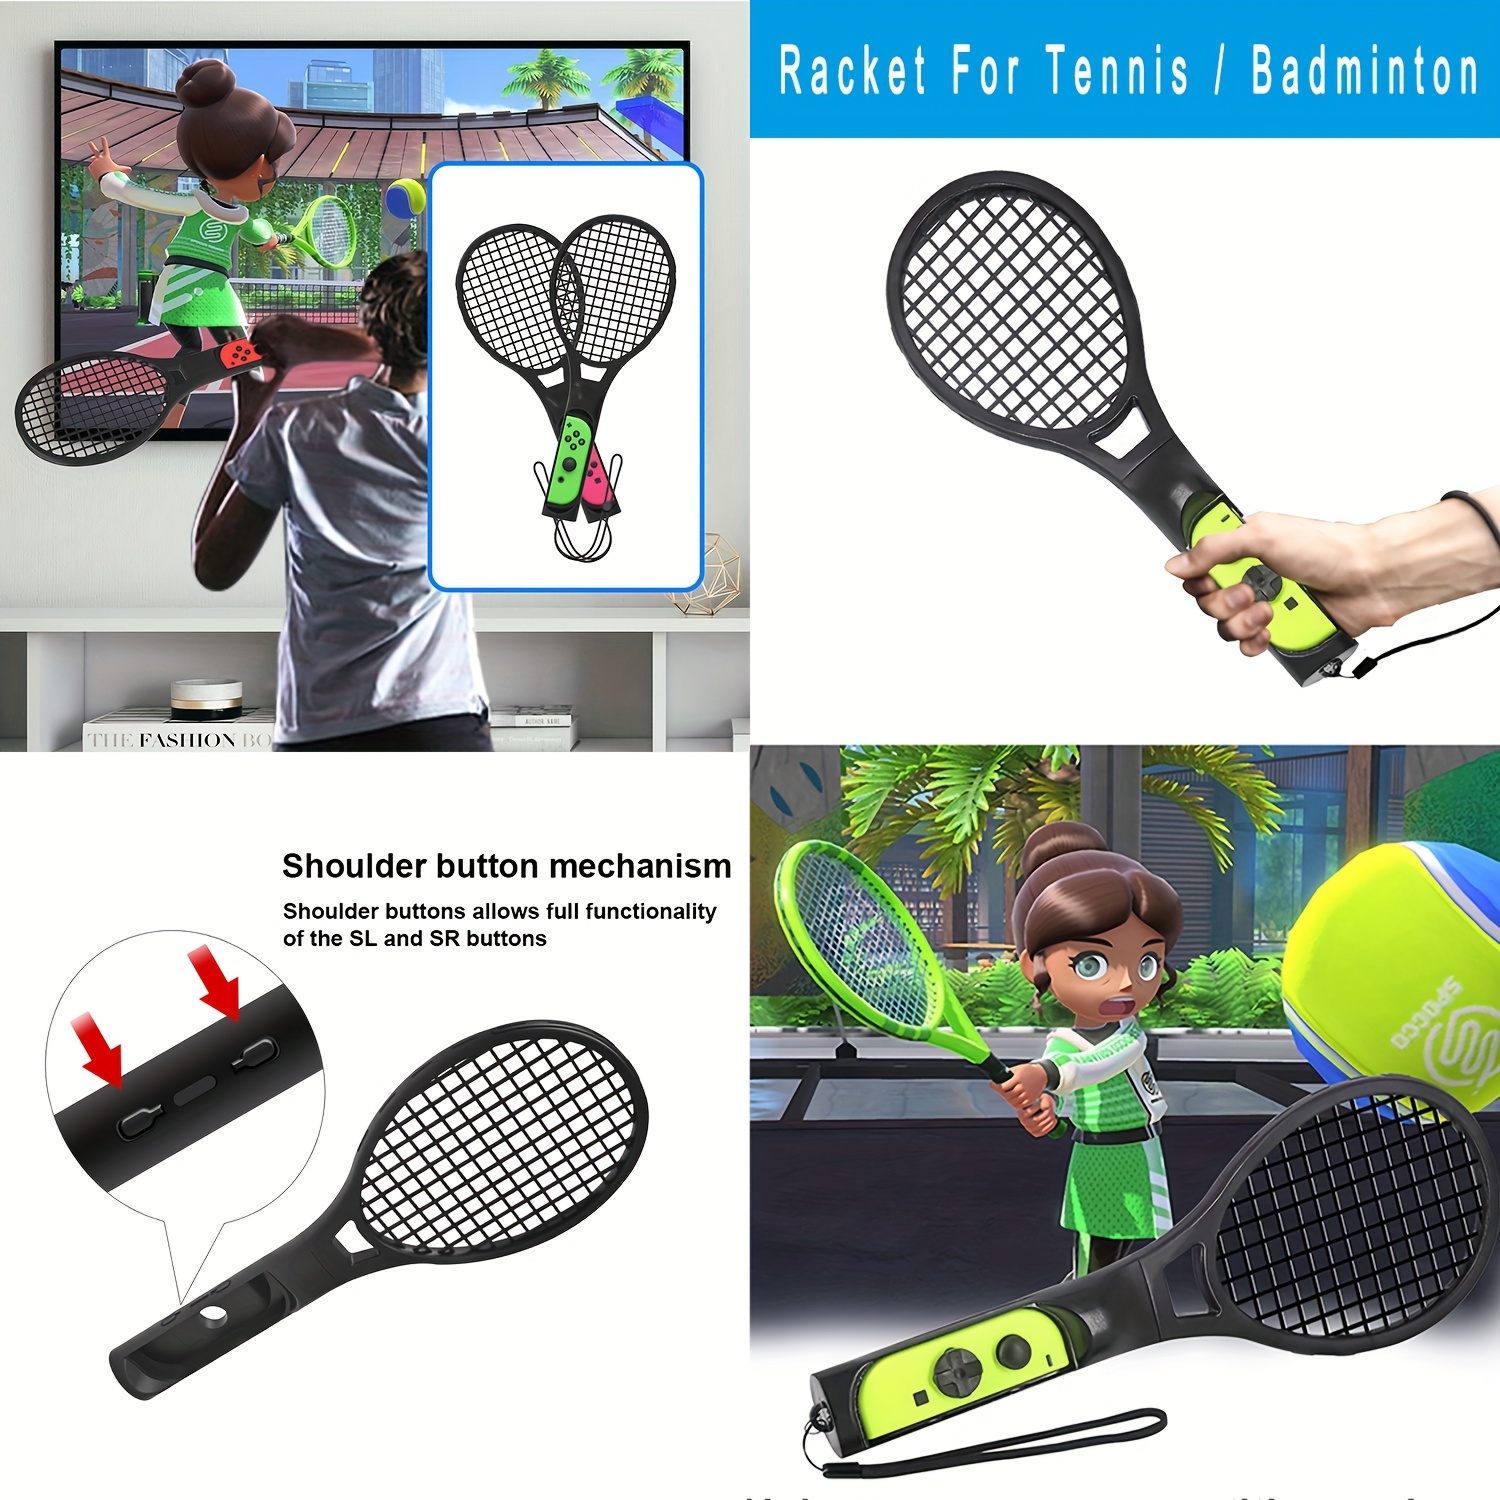 Ensemble d'accessoires de sport Switch 10 en 1 pour Switch / Oled, Switch  Sports Gaming Accessoires Kits pour améliorer l'expérience de jeu